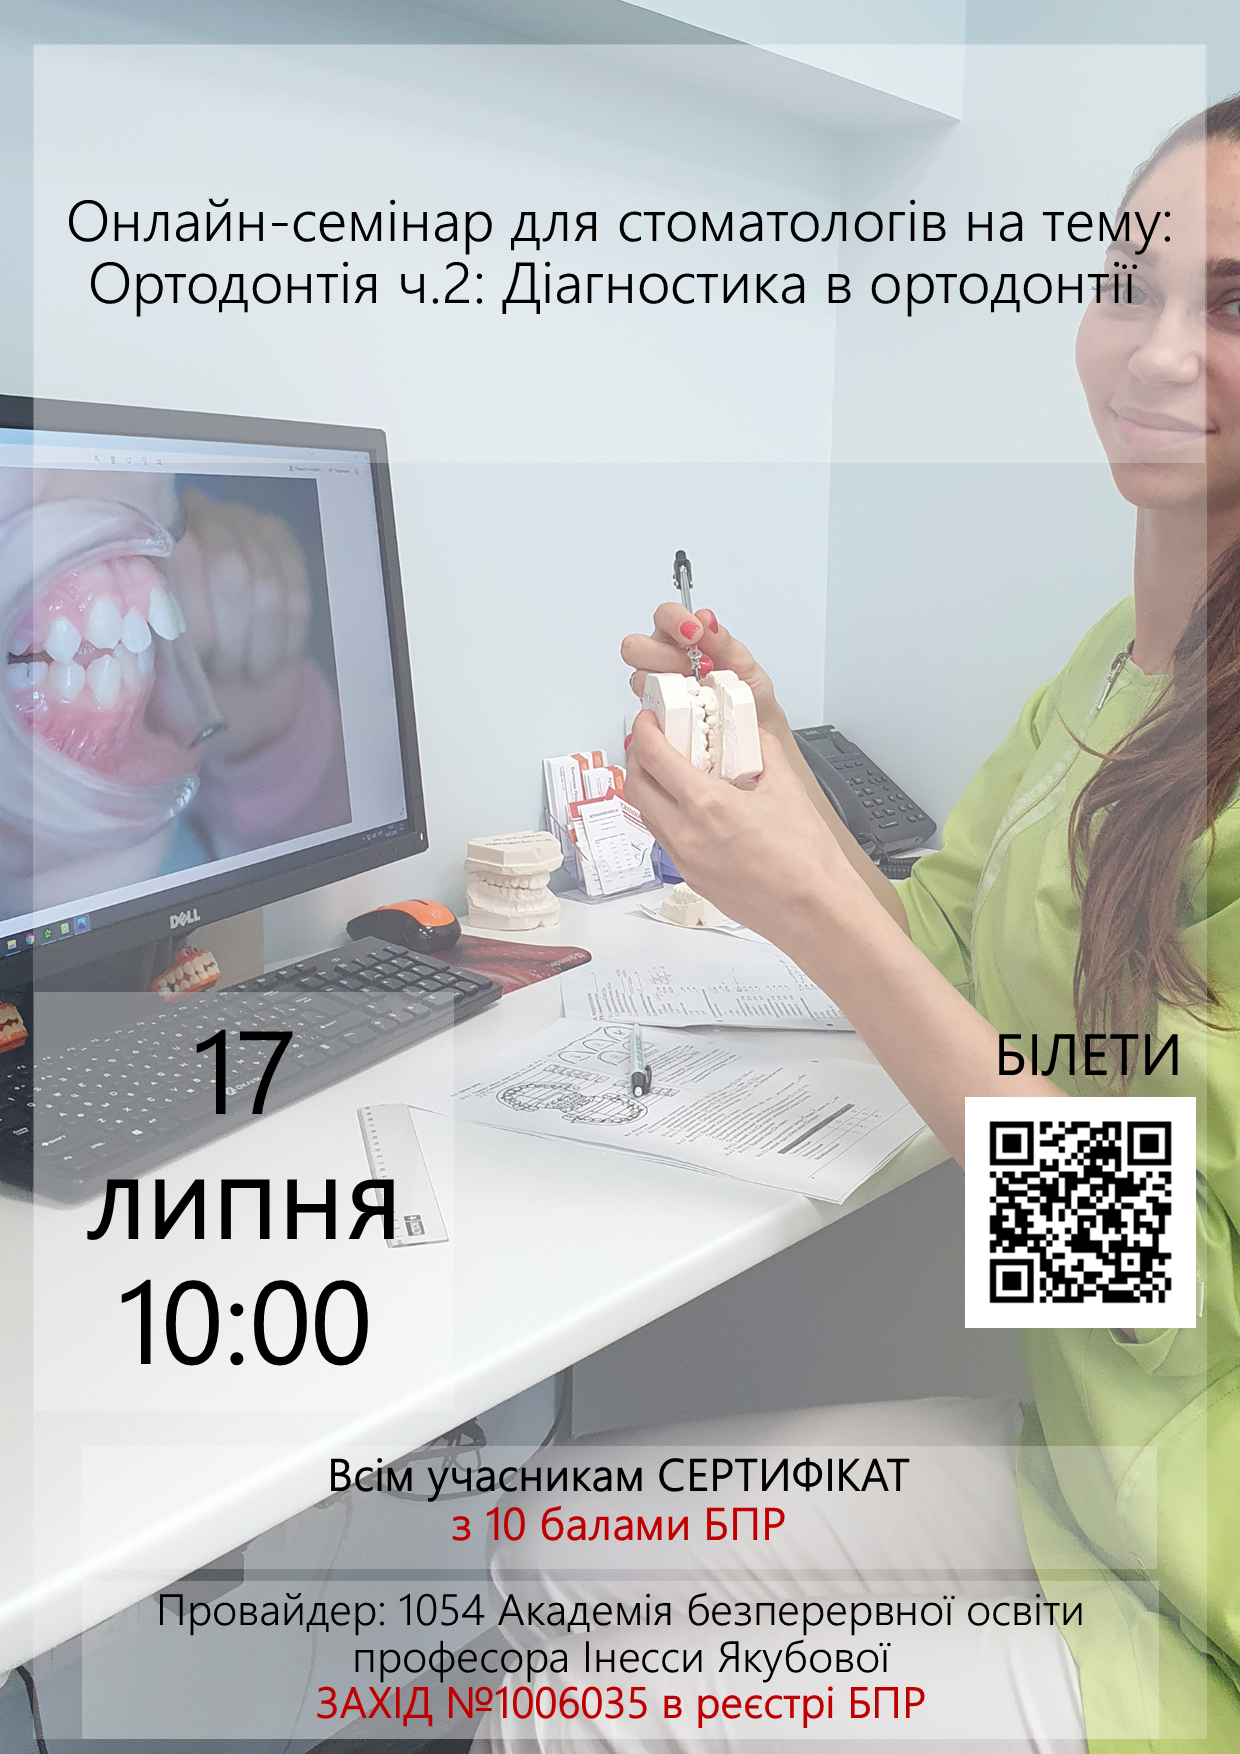 Онлайн-семінар для стоматологів на тему: Ортодонтія ч.2: Діагностика в ортодонтії 